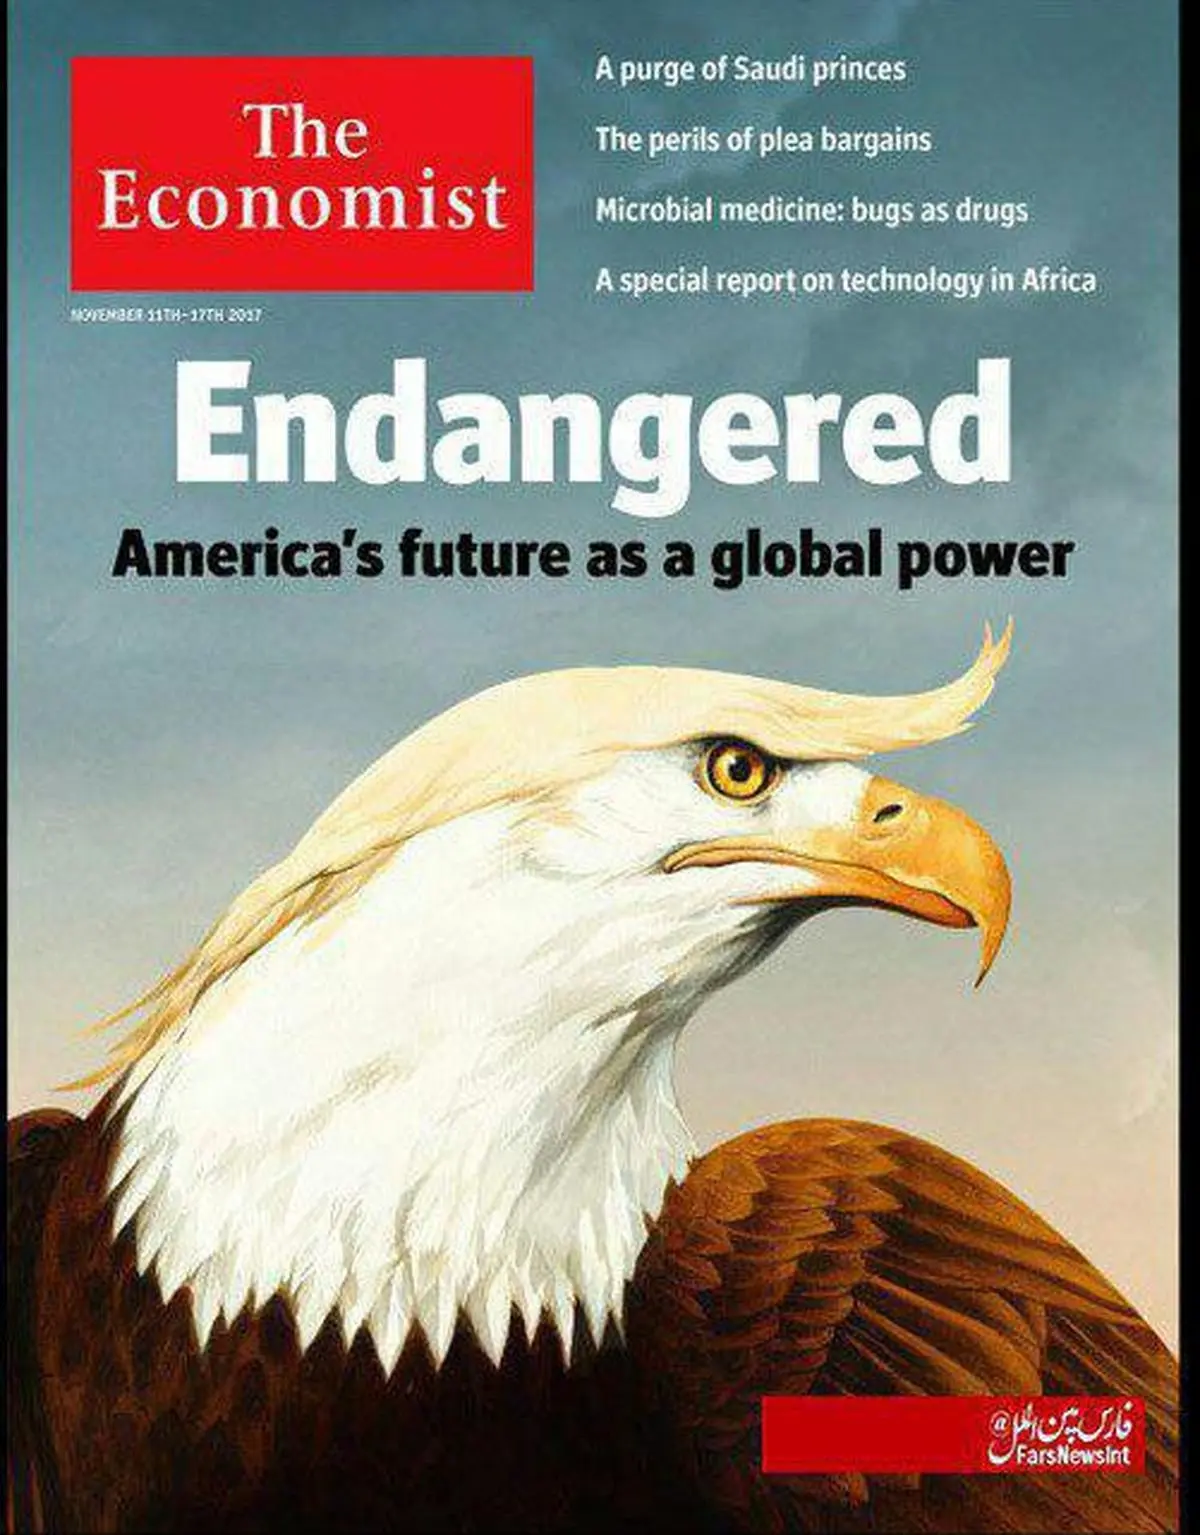 جلد نشریه اکونومیست؛ به خطرافتادن آینده آمریکا به عنوان یک «قدرت جهانی» در عصر ترامپ.